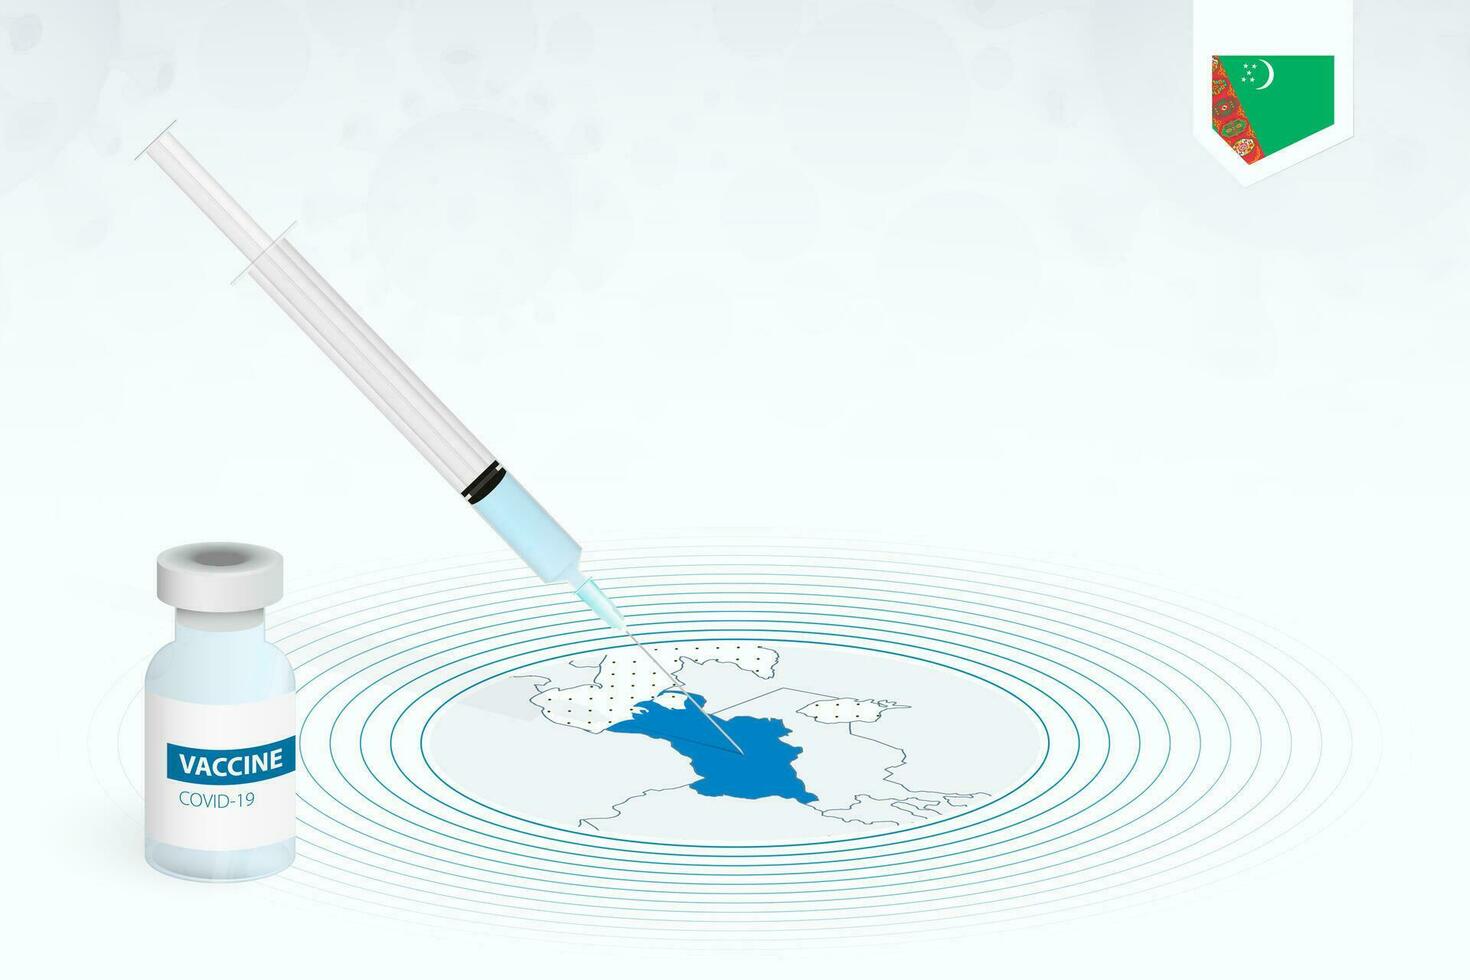 covid-19 vacunación en turkmenistán, coronavirus vacunación ilustración con vacuna botella y jeringuilla inyección en mapa de turkmenistán vector